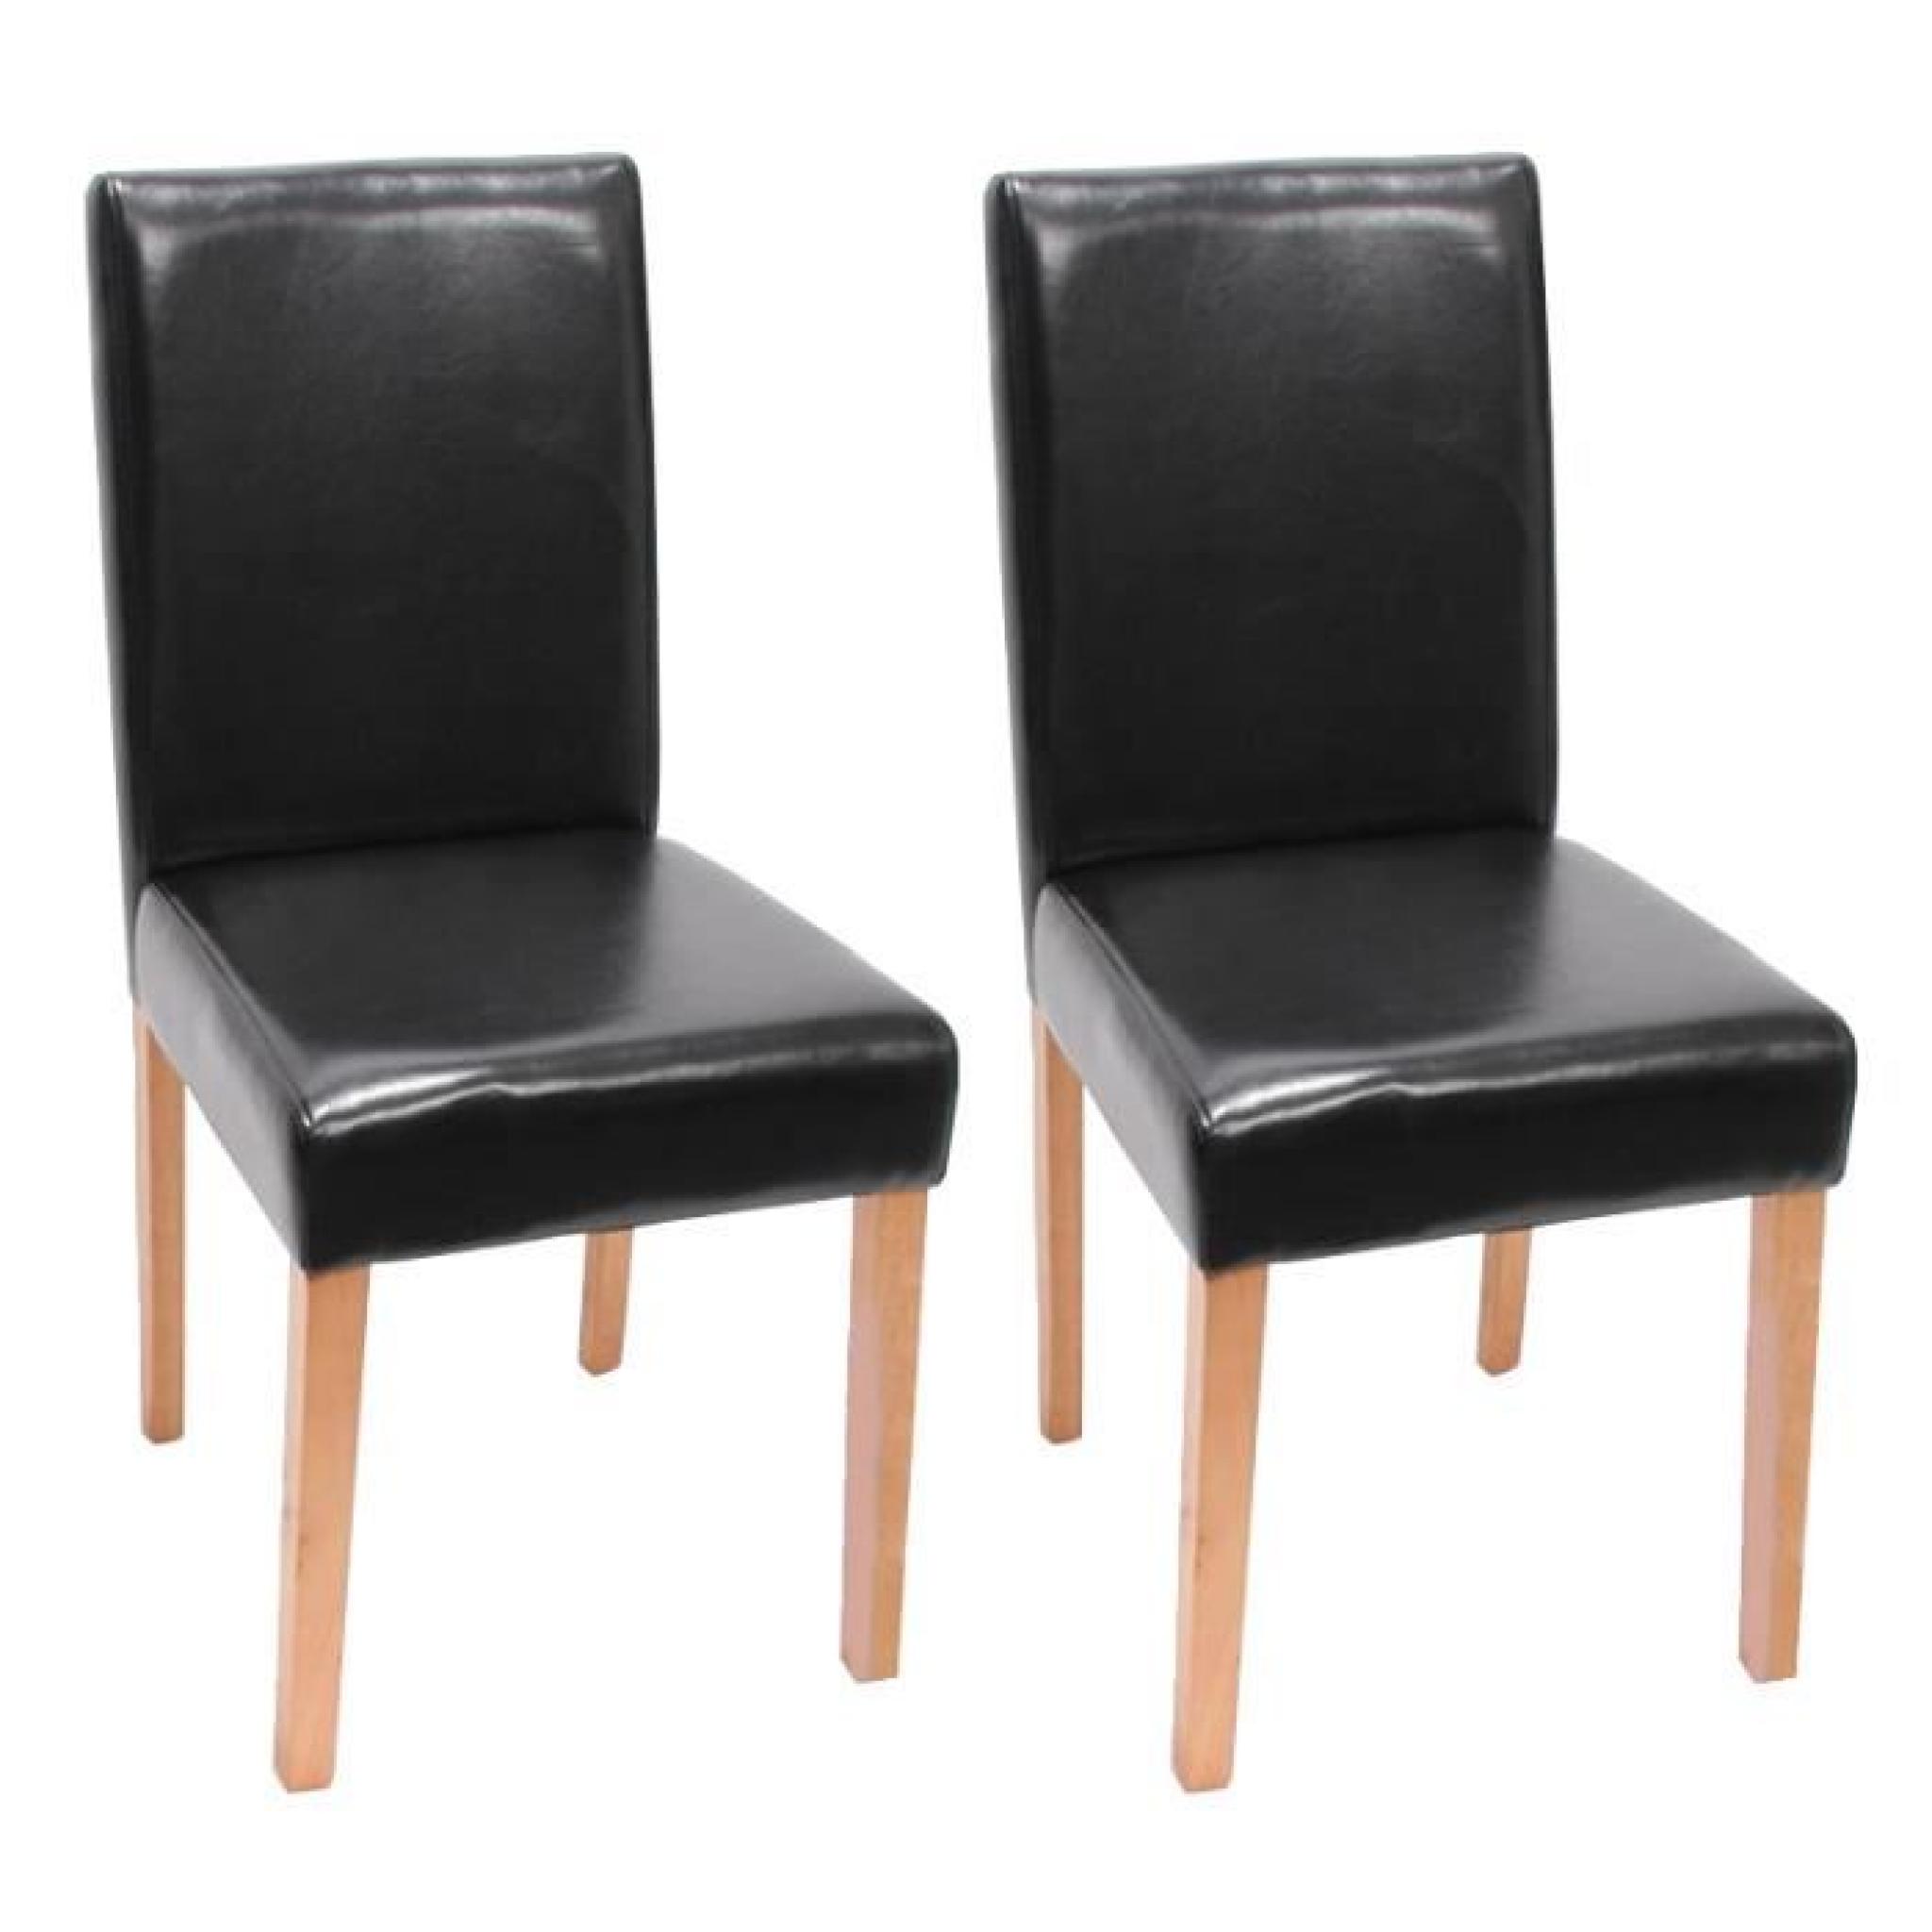  2 chaises Noir similicuir pieds clair très confortable